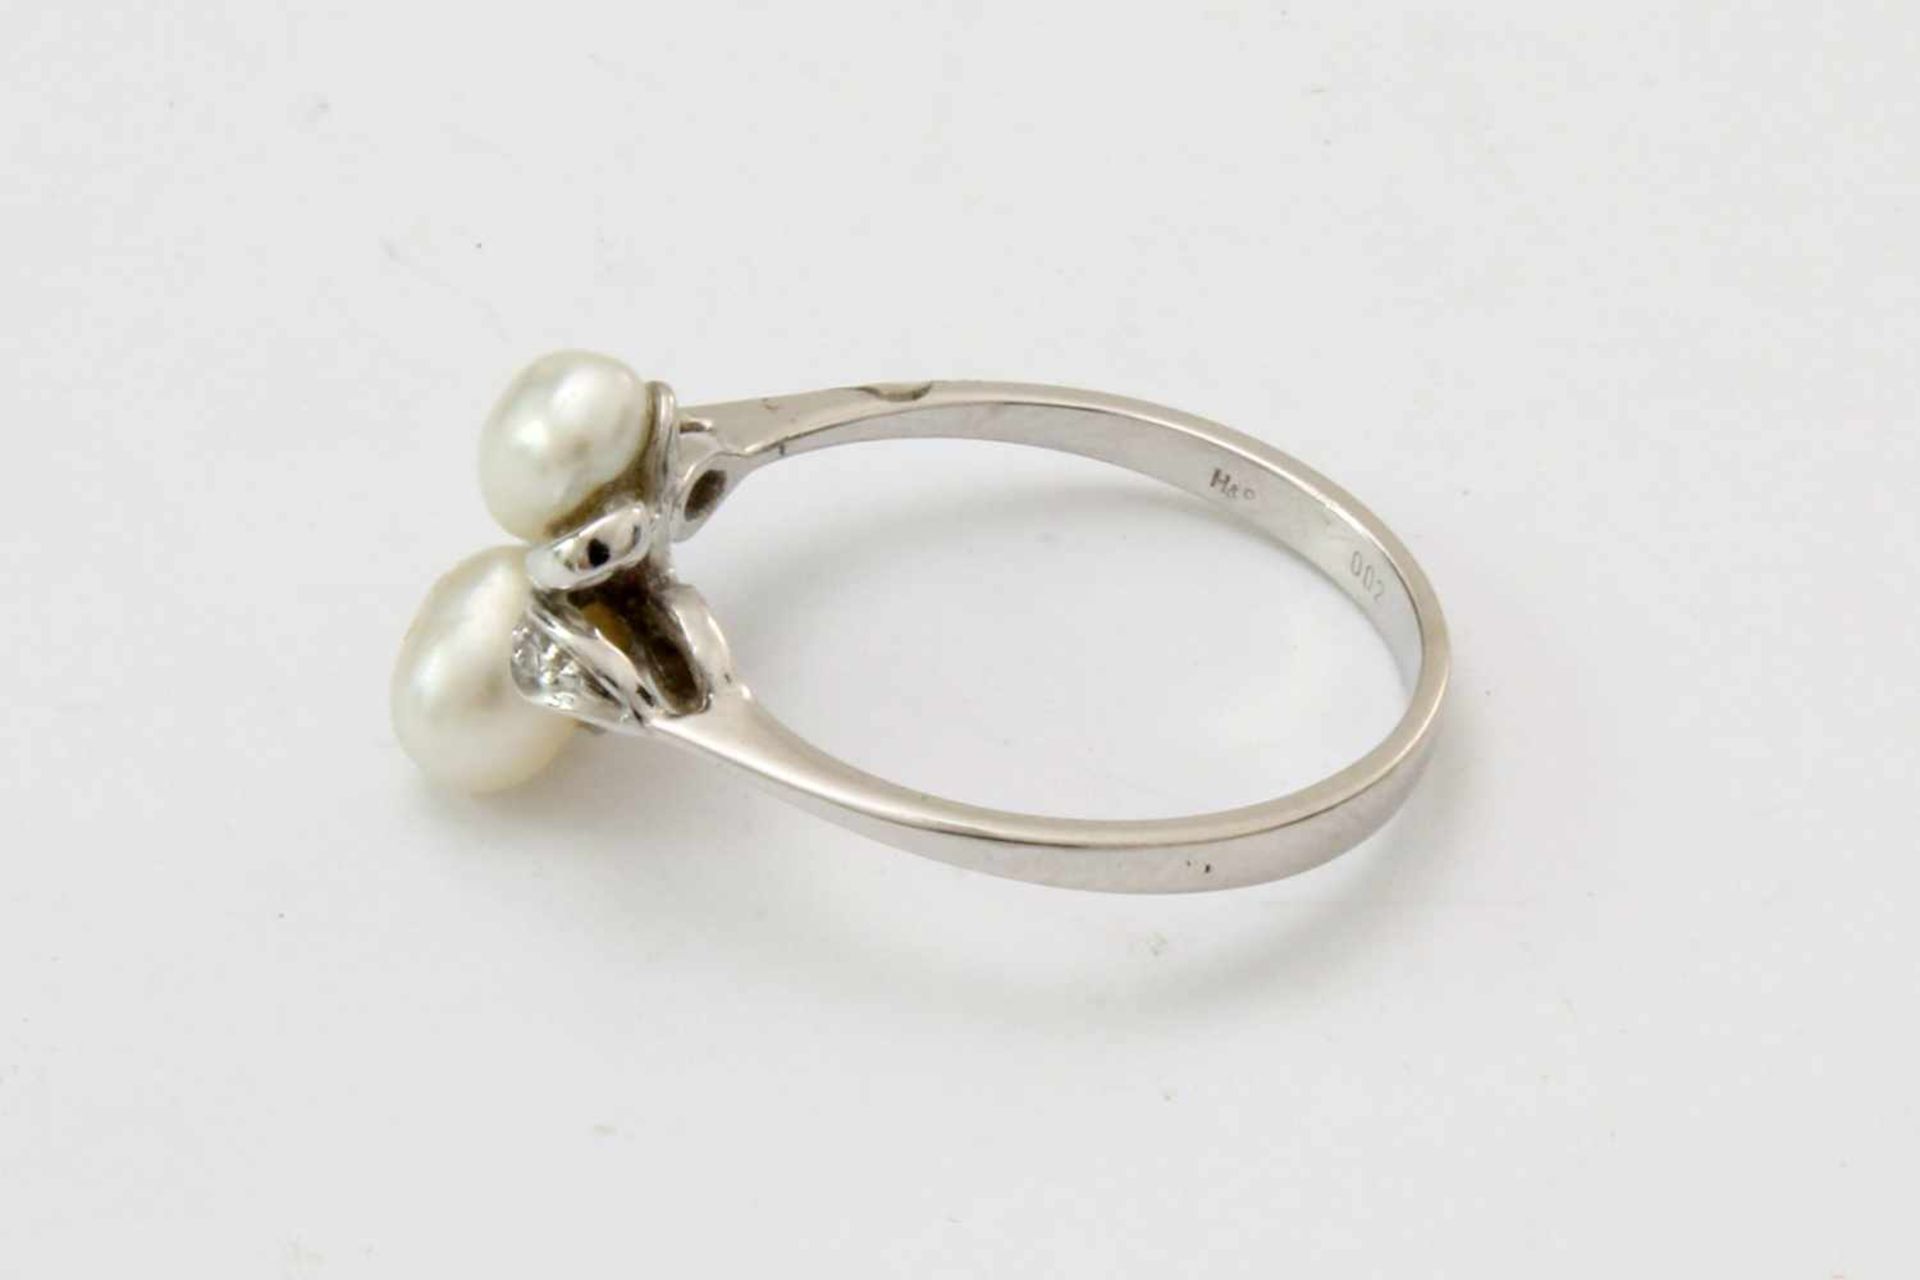 Weißgold Brillantring mit PerlenWG 585, besetzt mit 2 kleinen Brillanten und 2 Perlen, Ringgröße: - Bild 3 aus 4